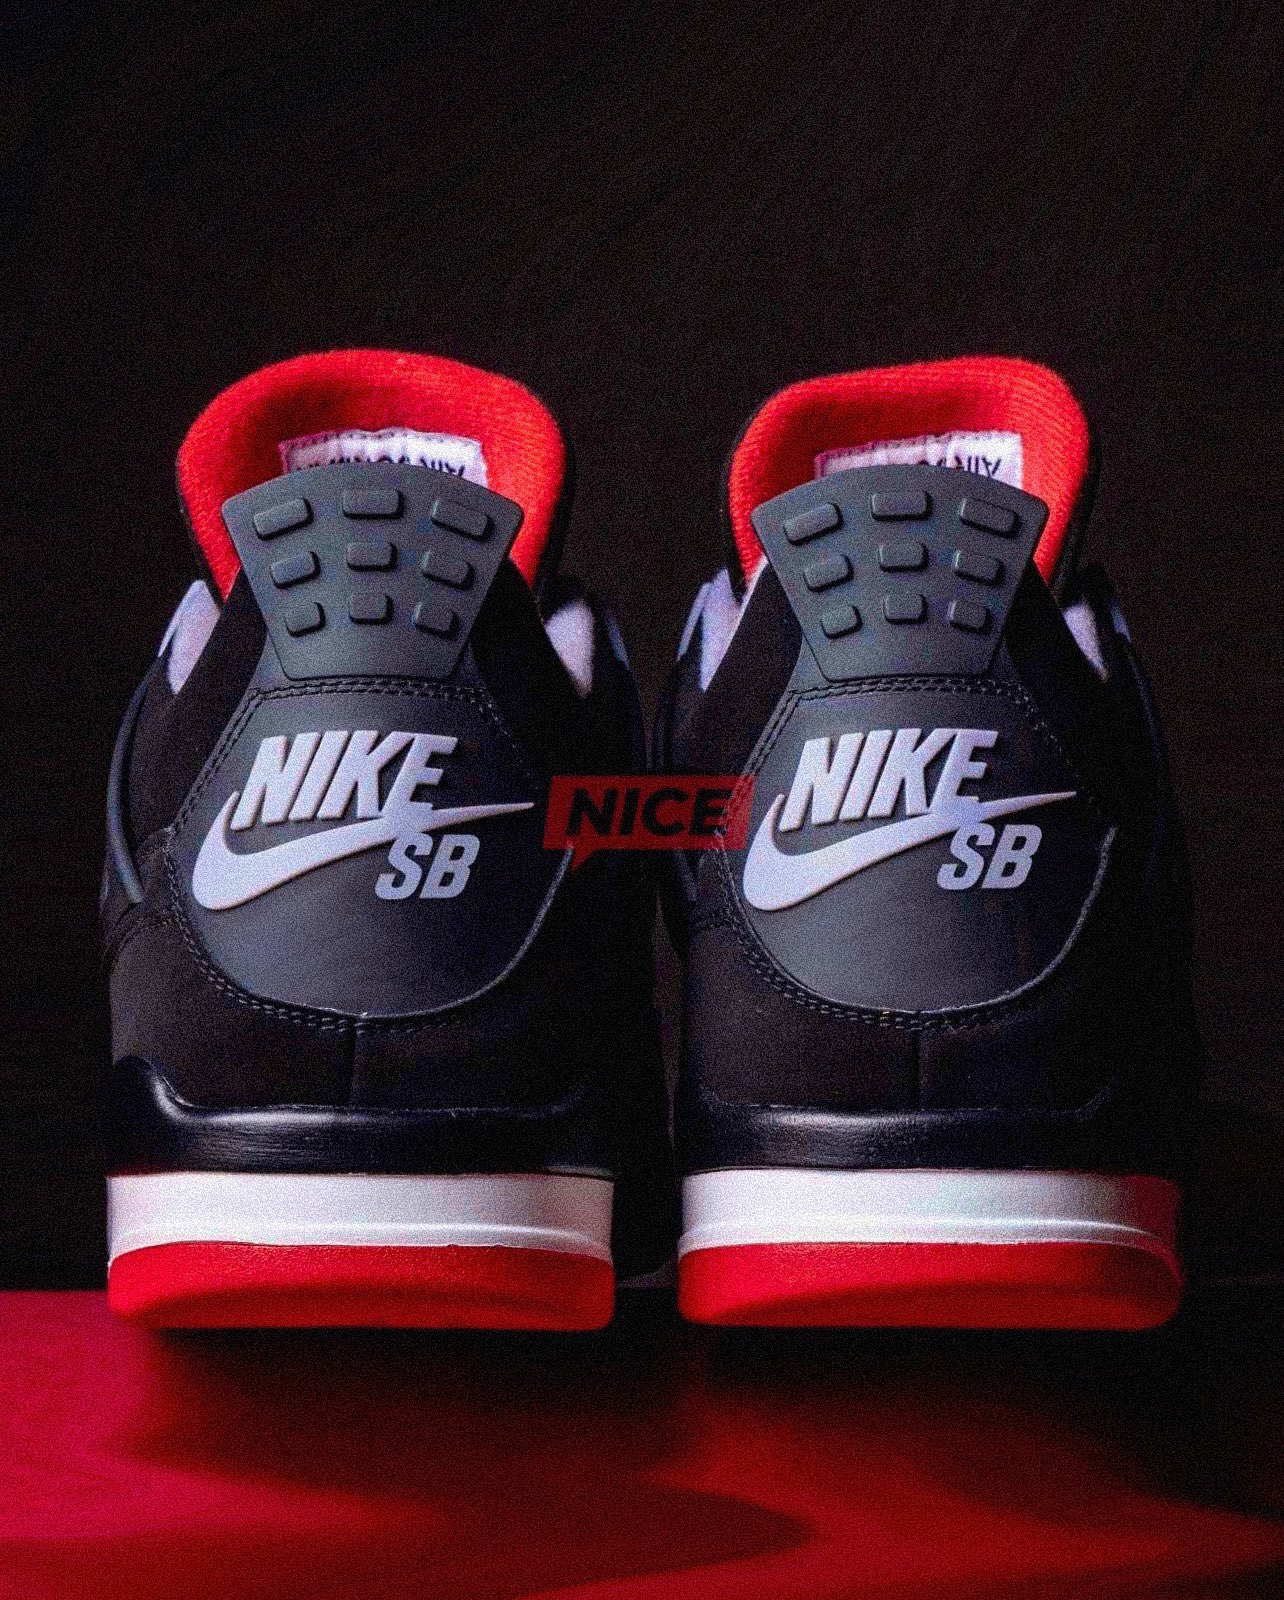 BREAKING 🚨 Nike SB and @Jumpman23 